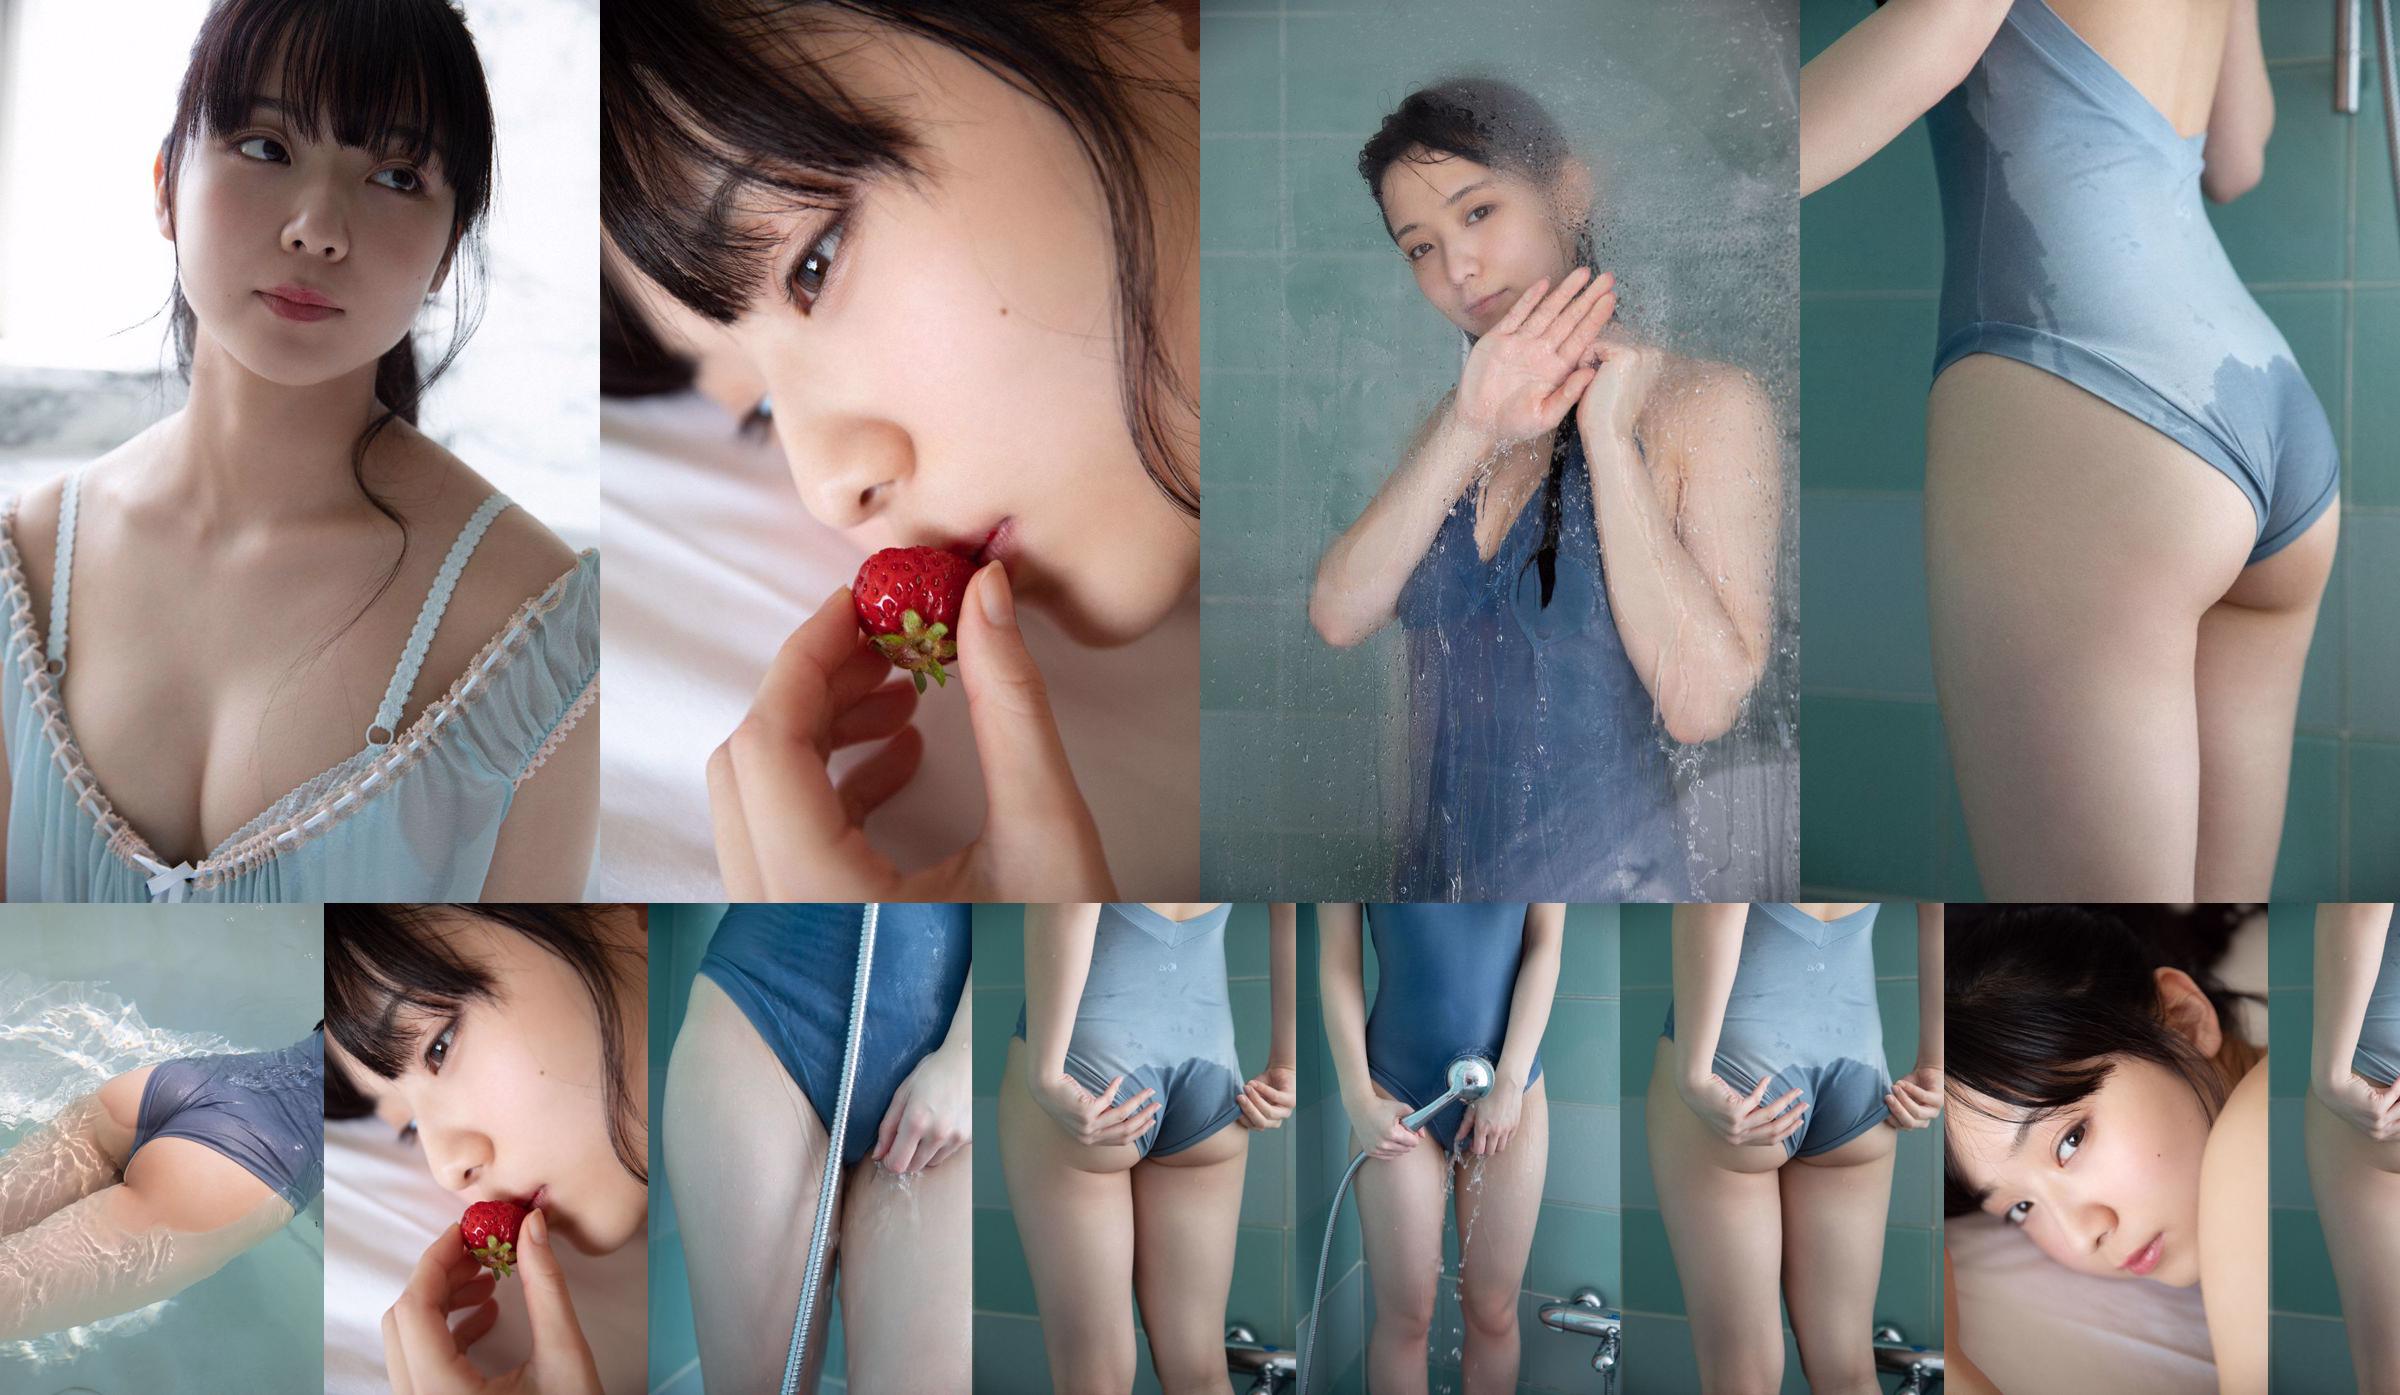 [VENERDI] Mio Imada "Miracolo dell'attrice + bikini nel dramma" Hana nochi Hare "" Foto No.f708d7 Pagina 1